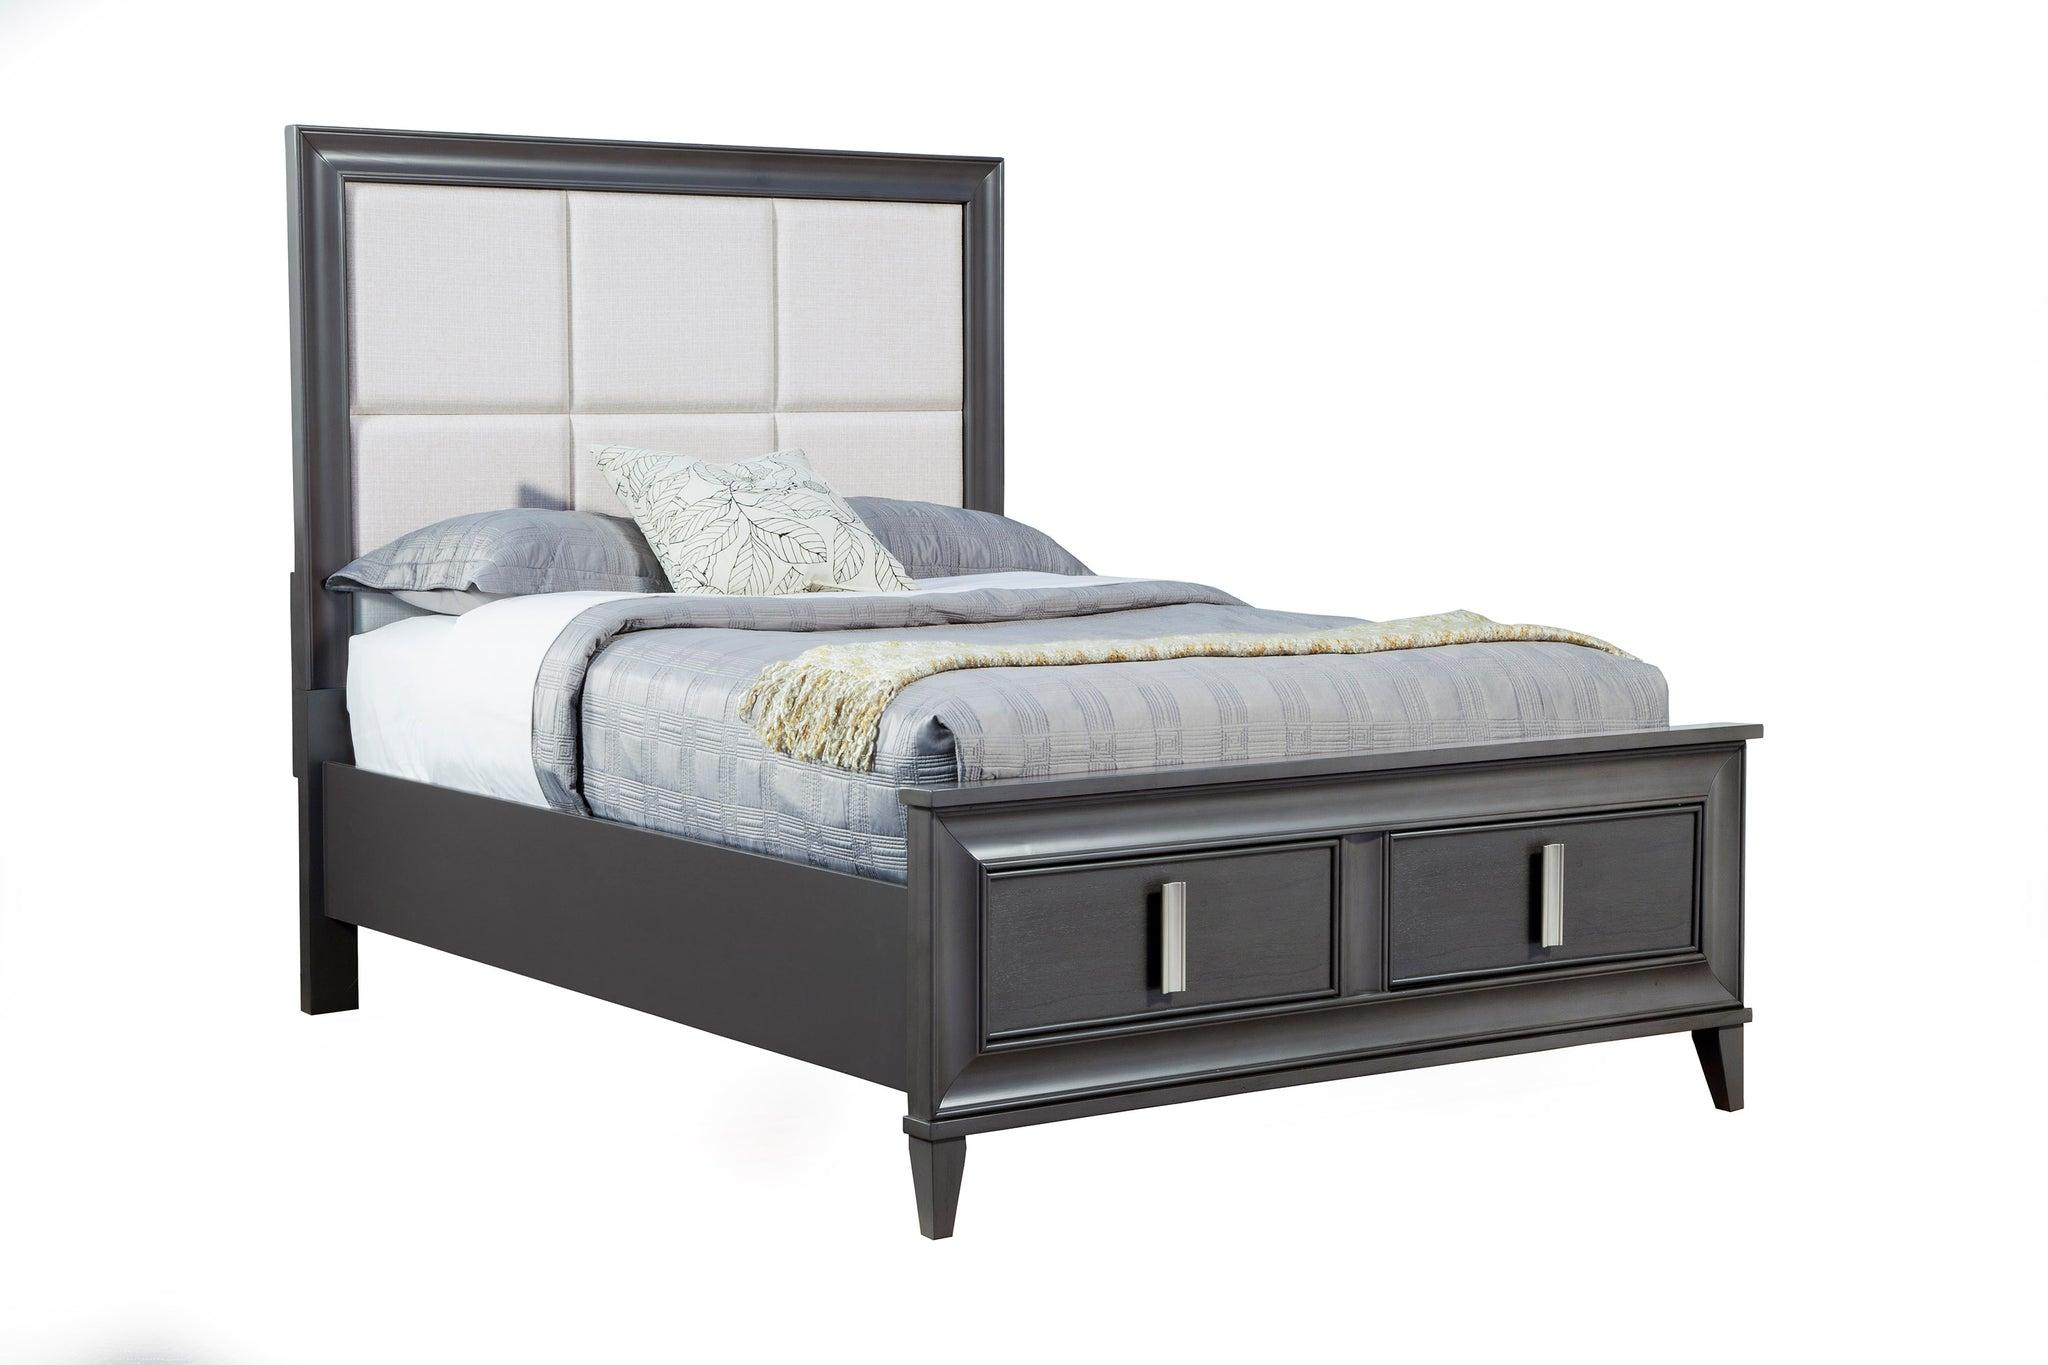 Contemporary, Modern Storage Bed LORRAINE 8171-07CK in Dark Gray, Cream Fabric